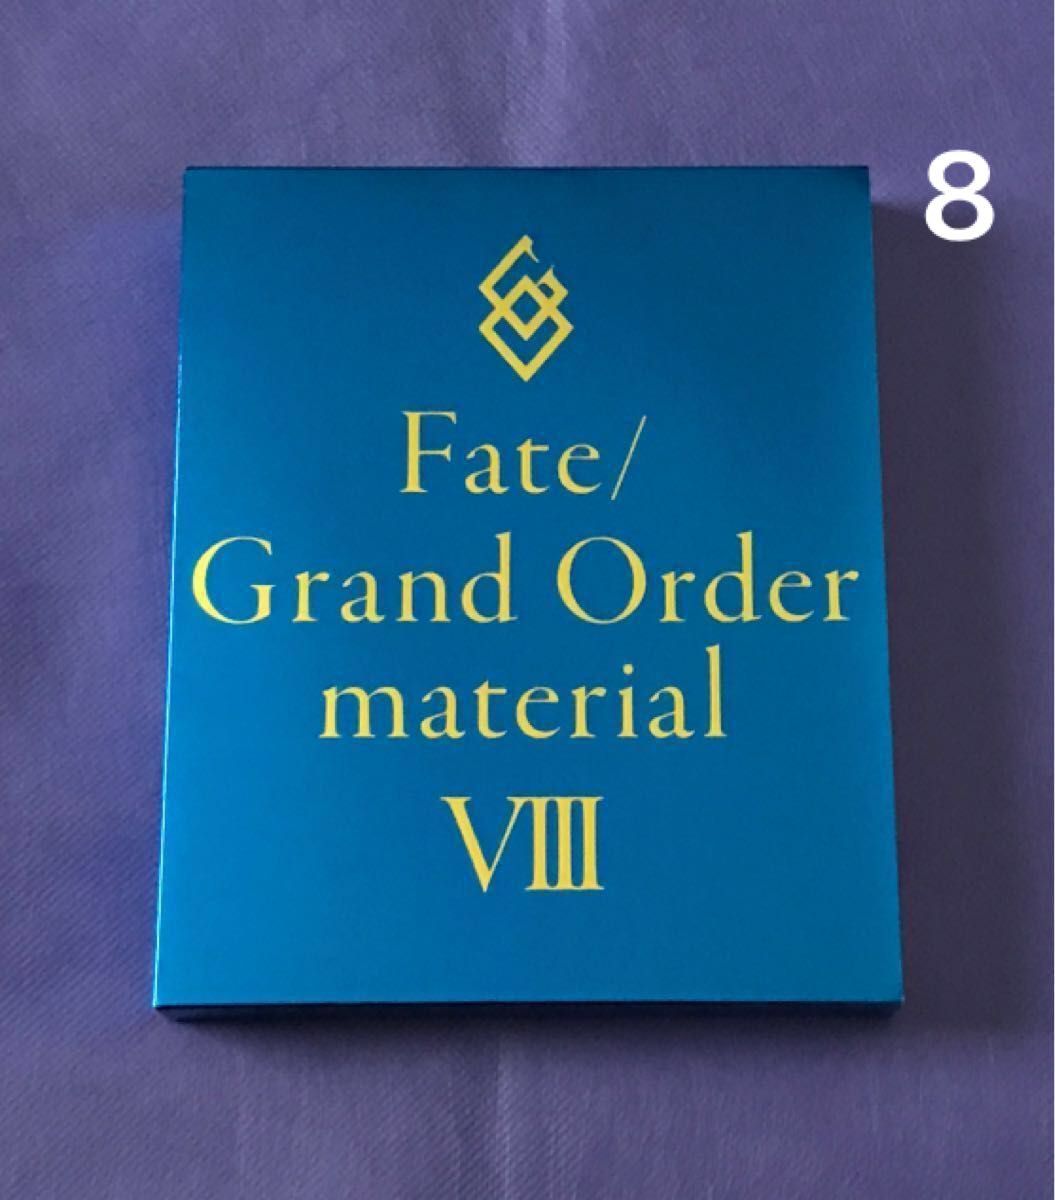 【 書籍 】Fate/Grand Order material VIII / 8